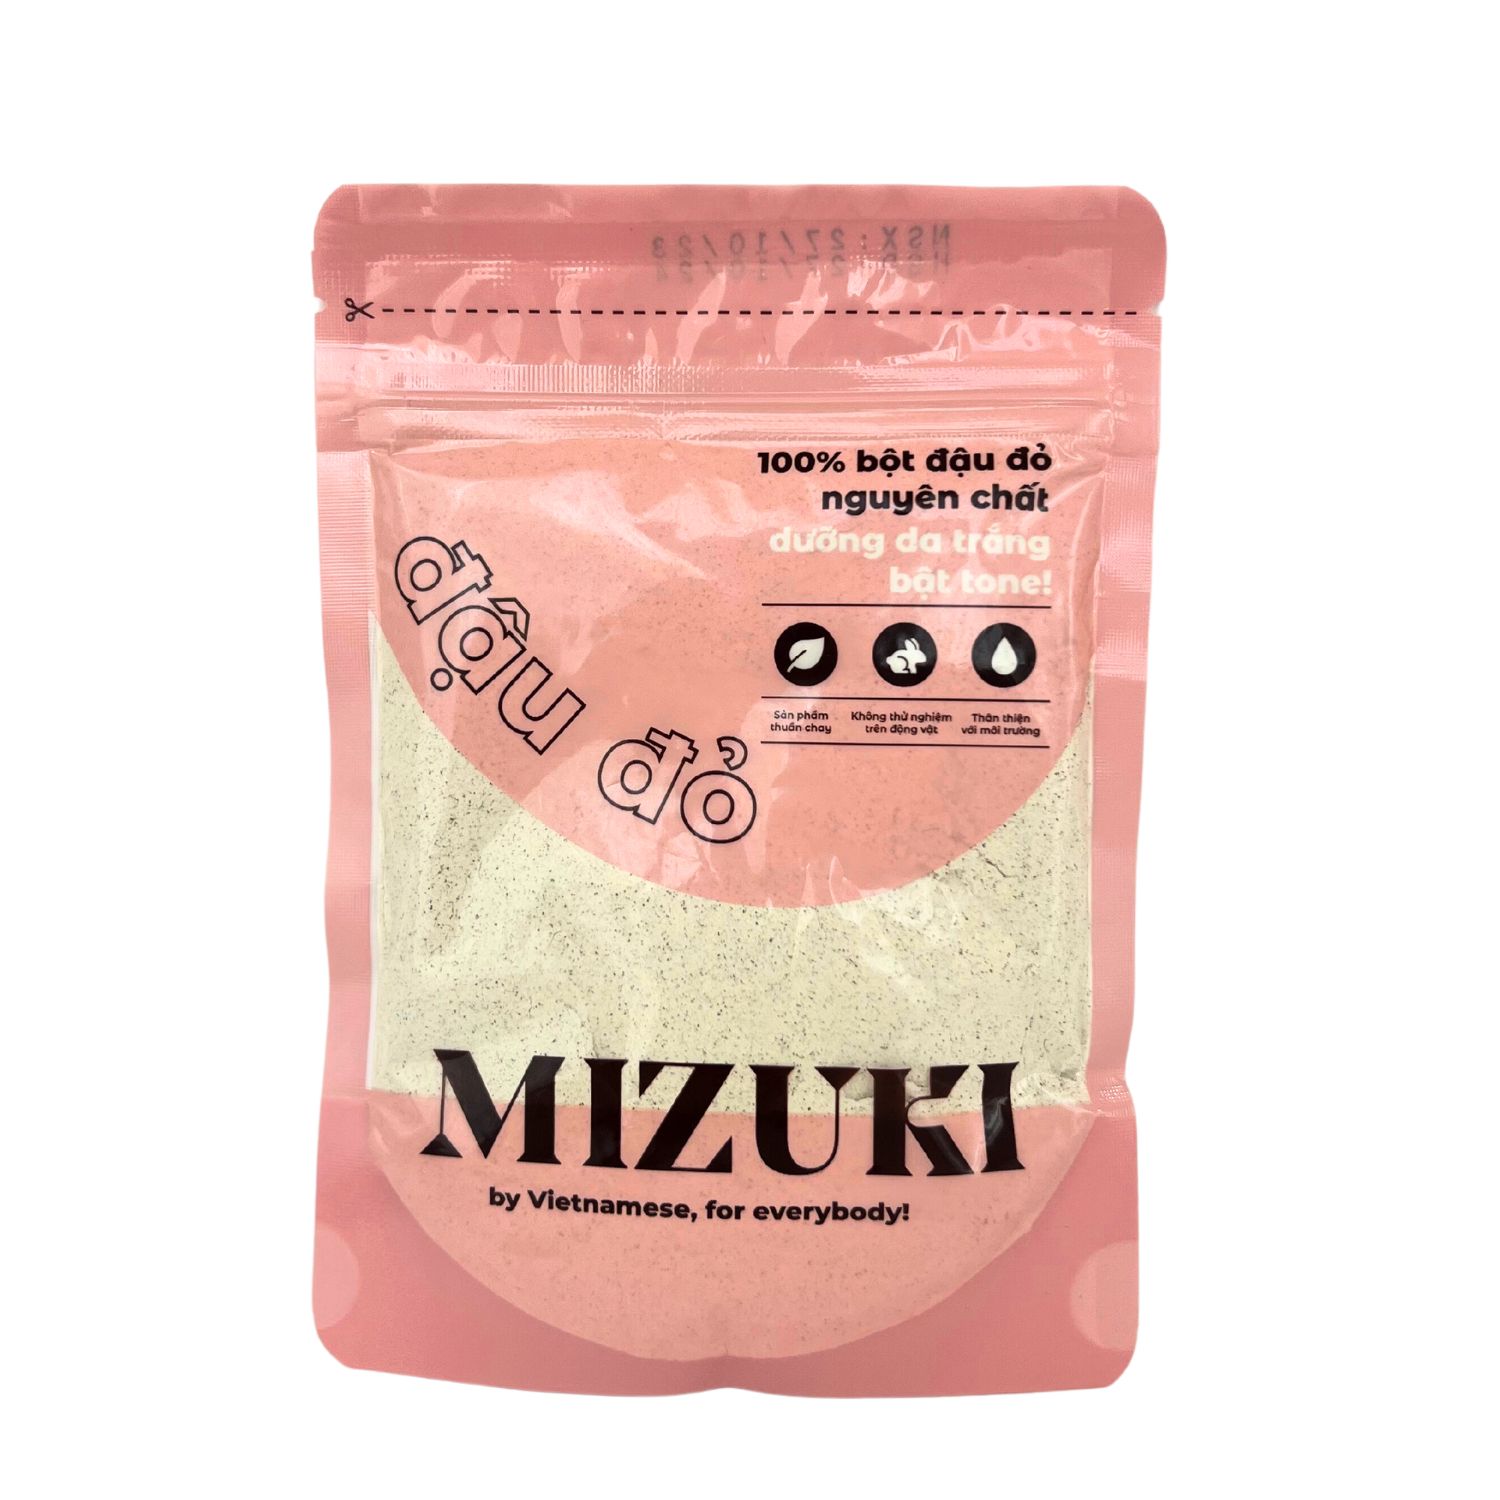 GIỚI THIỆU VỀ SẢN PHẨM:  Bột đậu đỏ Mizuki thành phần từ hạt đậu đỏ thượng hạng thuần chay, lành tính, được xay mịn, ray lọc kỹ lưỡng đạt đến độ tinh khiết cao. Mặt nạ bột đậu đỏ giúp dưỡng trắng da, chống oxy hoá, mờ thâm sạm dùng thường xuyên sẽ mang lại cho bạn 1 làn da sáng mịn và thông thoáng.  ĐẶC ĐIỂM NỔI BẬT:  • 100% bột đậu đỏ nguyên chất lành tính.  • Mùi thơm tự nhiên dịu nhẹ, không chất bảo quản.  • Sử dụng tại nhà dễ dàng.  • Sản phẩm chính hãng có mã vạch.  • Chi phí phù hợp với người tiêu dùng.    THÀNH PHẦN:  100% hạt đậu đỏ nguyên chất, trong đó gồm có:  - Vitamin A - C - E  - Folid Acid (Vitamin B9)  - Thiamine (Vitamin B1)  CÔNG DỤNG:  - Dưỡng da trắng hồng, đồng đều màu da, làm dịu da, ngăn sạm da.  - Tẩy tế bào chết cho da, sử dụng thường xuyên da sẽ mềm mượt bất ngờ.  - Trong thành phần bột đậu đỏ có chứa nhiều vitamin B1, B6 chống oxy hóa mạnh mẽ, giúp trẻ hóa và tăng sức đề kháng cho da, đồng thời ức chế hắc sắc tố melanin, dưỡng sáng, nâng tone da hiệu quả.  - Vitamin A, C, E hỗ trợ sản sinh collagen tăng độ đàn hồi cho da, đồng thời ngăn chặn quá trình lão hóa da, làm mờ các nếp nhăn trên da.    HƯỚNG DẪN SỬ DỤNG :  1. Rửa mặt: Làm ướt mặt, dùng một ít bột đỏ pha thêm chút nước, thoa nhẹ nhàng lên da, rửa lại với nước ấm, lau khô. Chỉ áp dụng một tuần 2 lần để tránh làm mỏng da, khiến da bị tổn thương.  2. Mặt nạ dưỡng da: Pha 1 thìa bột đậu đỏ với sữa chua/ mật ong nguyên chất hoặc sữa tươi không đường, trộn đều hỗn hợp lại với nhau. Sau 15-20 phút lưu lại trên da hãy làm sạch với nước lạnh. Bạn sẽ thấy ngạc nhiên khi da căng bóng, nếp nhăn sẽ đỡ hằn sâu hơn rất nhiều.  3. Mặt nạ dưỡng trắng, căng da mặt: Trộn đều 1 thìa bột đậu đỏ với lòng đỏ trứng gà và mật ong nguyên chất, đắp hỗn hợp lên da 15p, sau đó rửa sạch.  4. Tắm, dưỡng trắng body: Sử dụng ½ chén bột đậu đỏ. Cho sữa tươi vào, trộn đều. Làm ướt cơ thể, massage hỗn hợp trên lên da, nhẹ nhàng theo chuyển động tròn, chú ý những vùng da sậm màu trong khoảng 10 phút rồi tắm lại với nước ấm. Sử dụng kem dưỡng ngay sau khi tắm để có kết quả tốt nhất.  HƯỚNG DẪN BẢO QUẢN:  Để sản phẩm ở nhiệt độ phòng nơi khô ráo, hoặc nhiệt độ mát 4-8 độ C (Ngăn mát tủ lạnh)  Sau khi mở bao bì 1 tháng nếu bảo quản ở nhiệt độ phòng hoặc 5-7 tháng nếu bảo quản trong tủ lạnh.  LƯU Ý:  ❌ Ngưng sử dụng nếu thấy bất kì sự thay đổi nào về mùi và màu sắc của sản phẩm.  ❌ Ngưng sử dụng nếu bị kích ứng da hoặc không hợp với tính chất của sản phẩm hoặc mọi trường hợp như ngứa, rát, mẩn đỏ. Cần nhờ đến tư vấn của bác sĩ kỹ trước khi dùng.  ❌ Không để mặt nạ khô mới rửa mặt, vì khi đó mặt nạ sẽ hút ngược lại dưỡng chất của da.  ❌ Thử trên góc mặt để kiểm tra xem cơ địa có dị ứng với thành phần của sản phẩm không.  *Sản phẩm bột thiên nhiên là nguyên chất 100% an toàn, không pha trộn chất tạo màu, không chất tạo mùi.